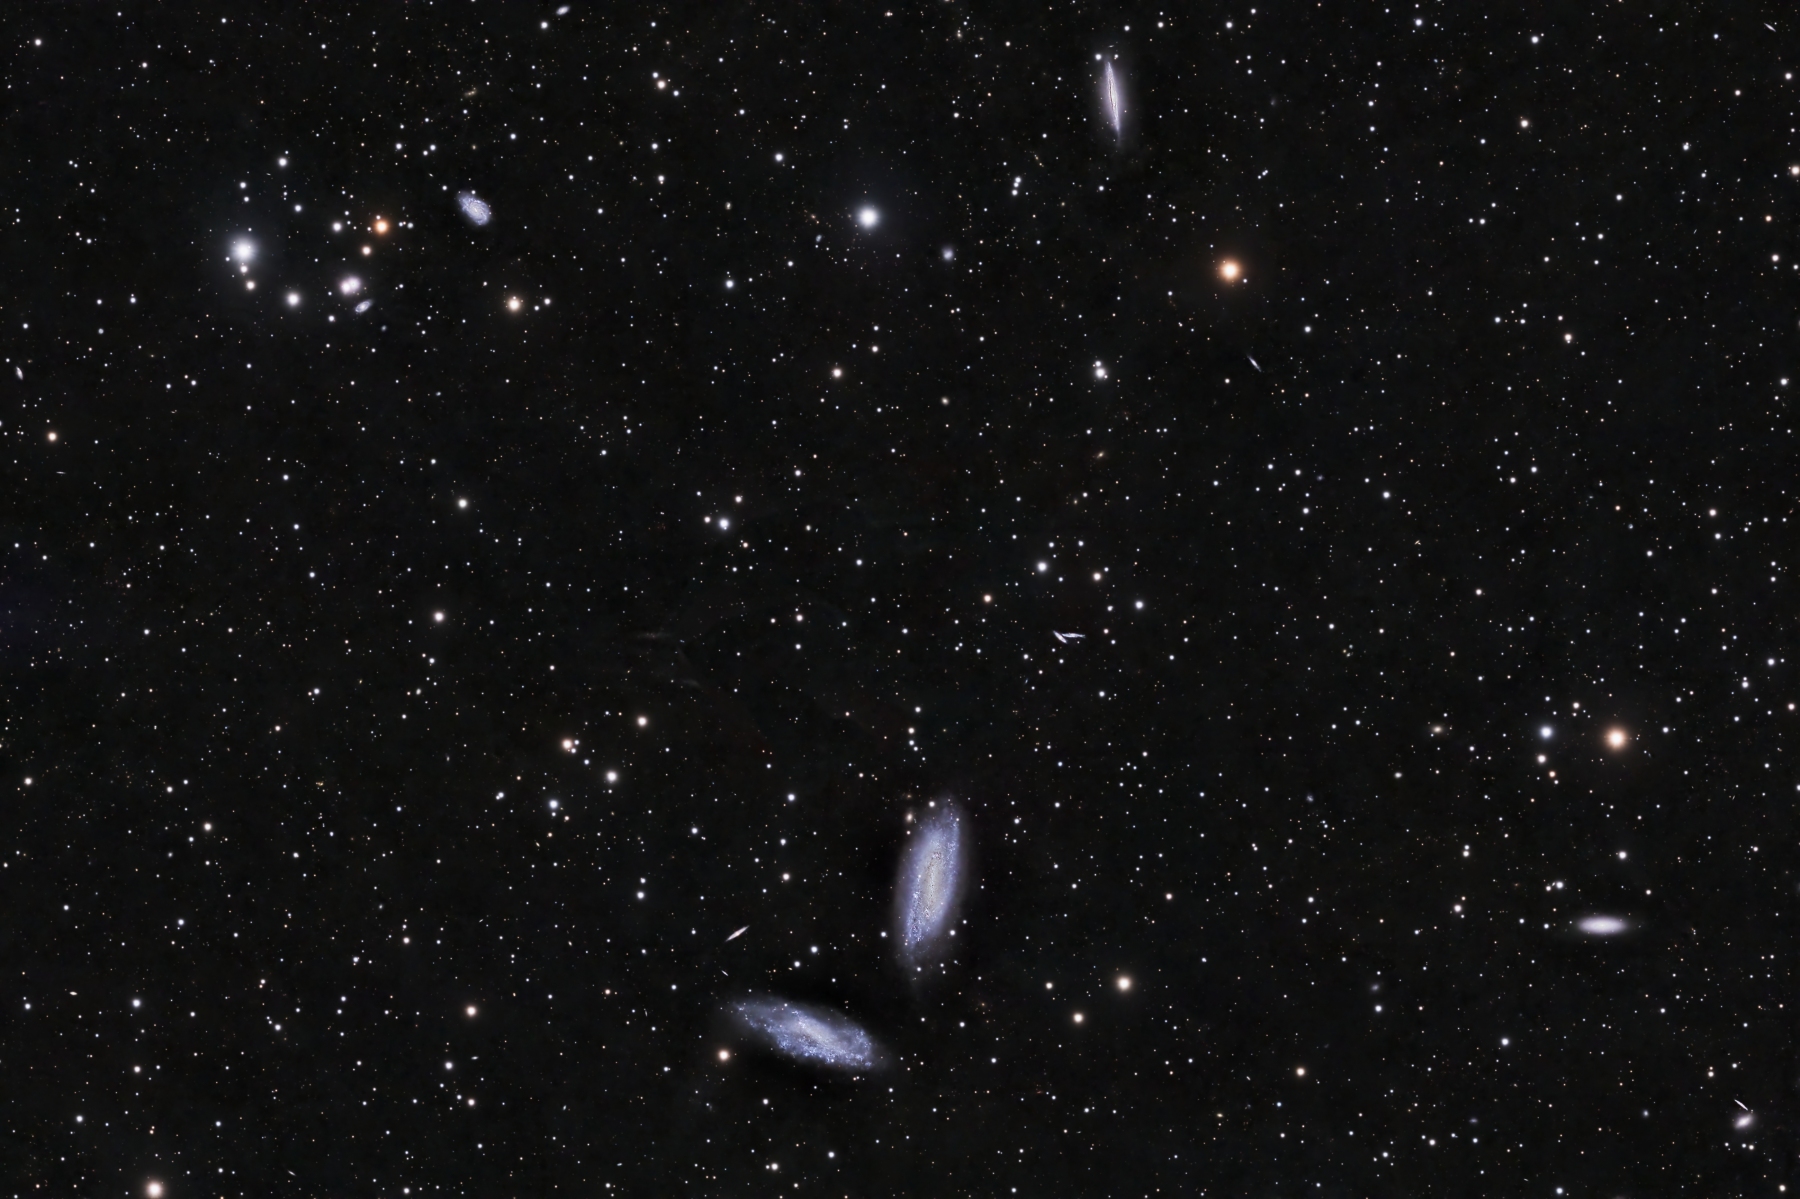 Tom Engwall NGC 672 and NGC 1727